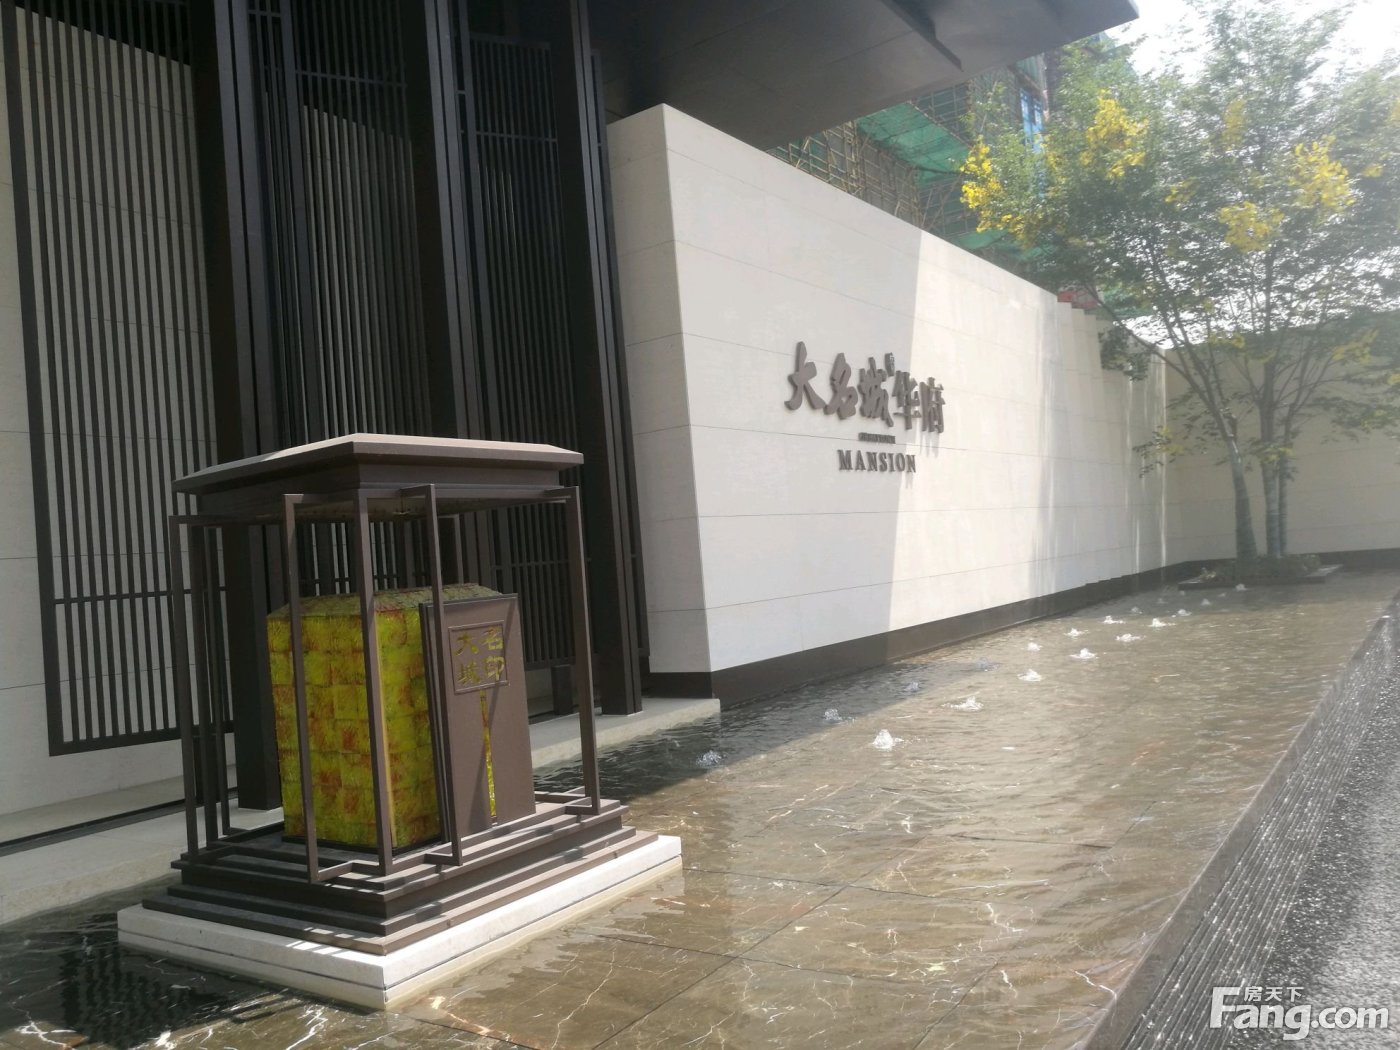 置业顾问郭贞祥发布了一条大名城华府的抖房